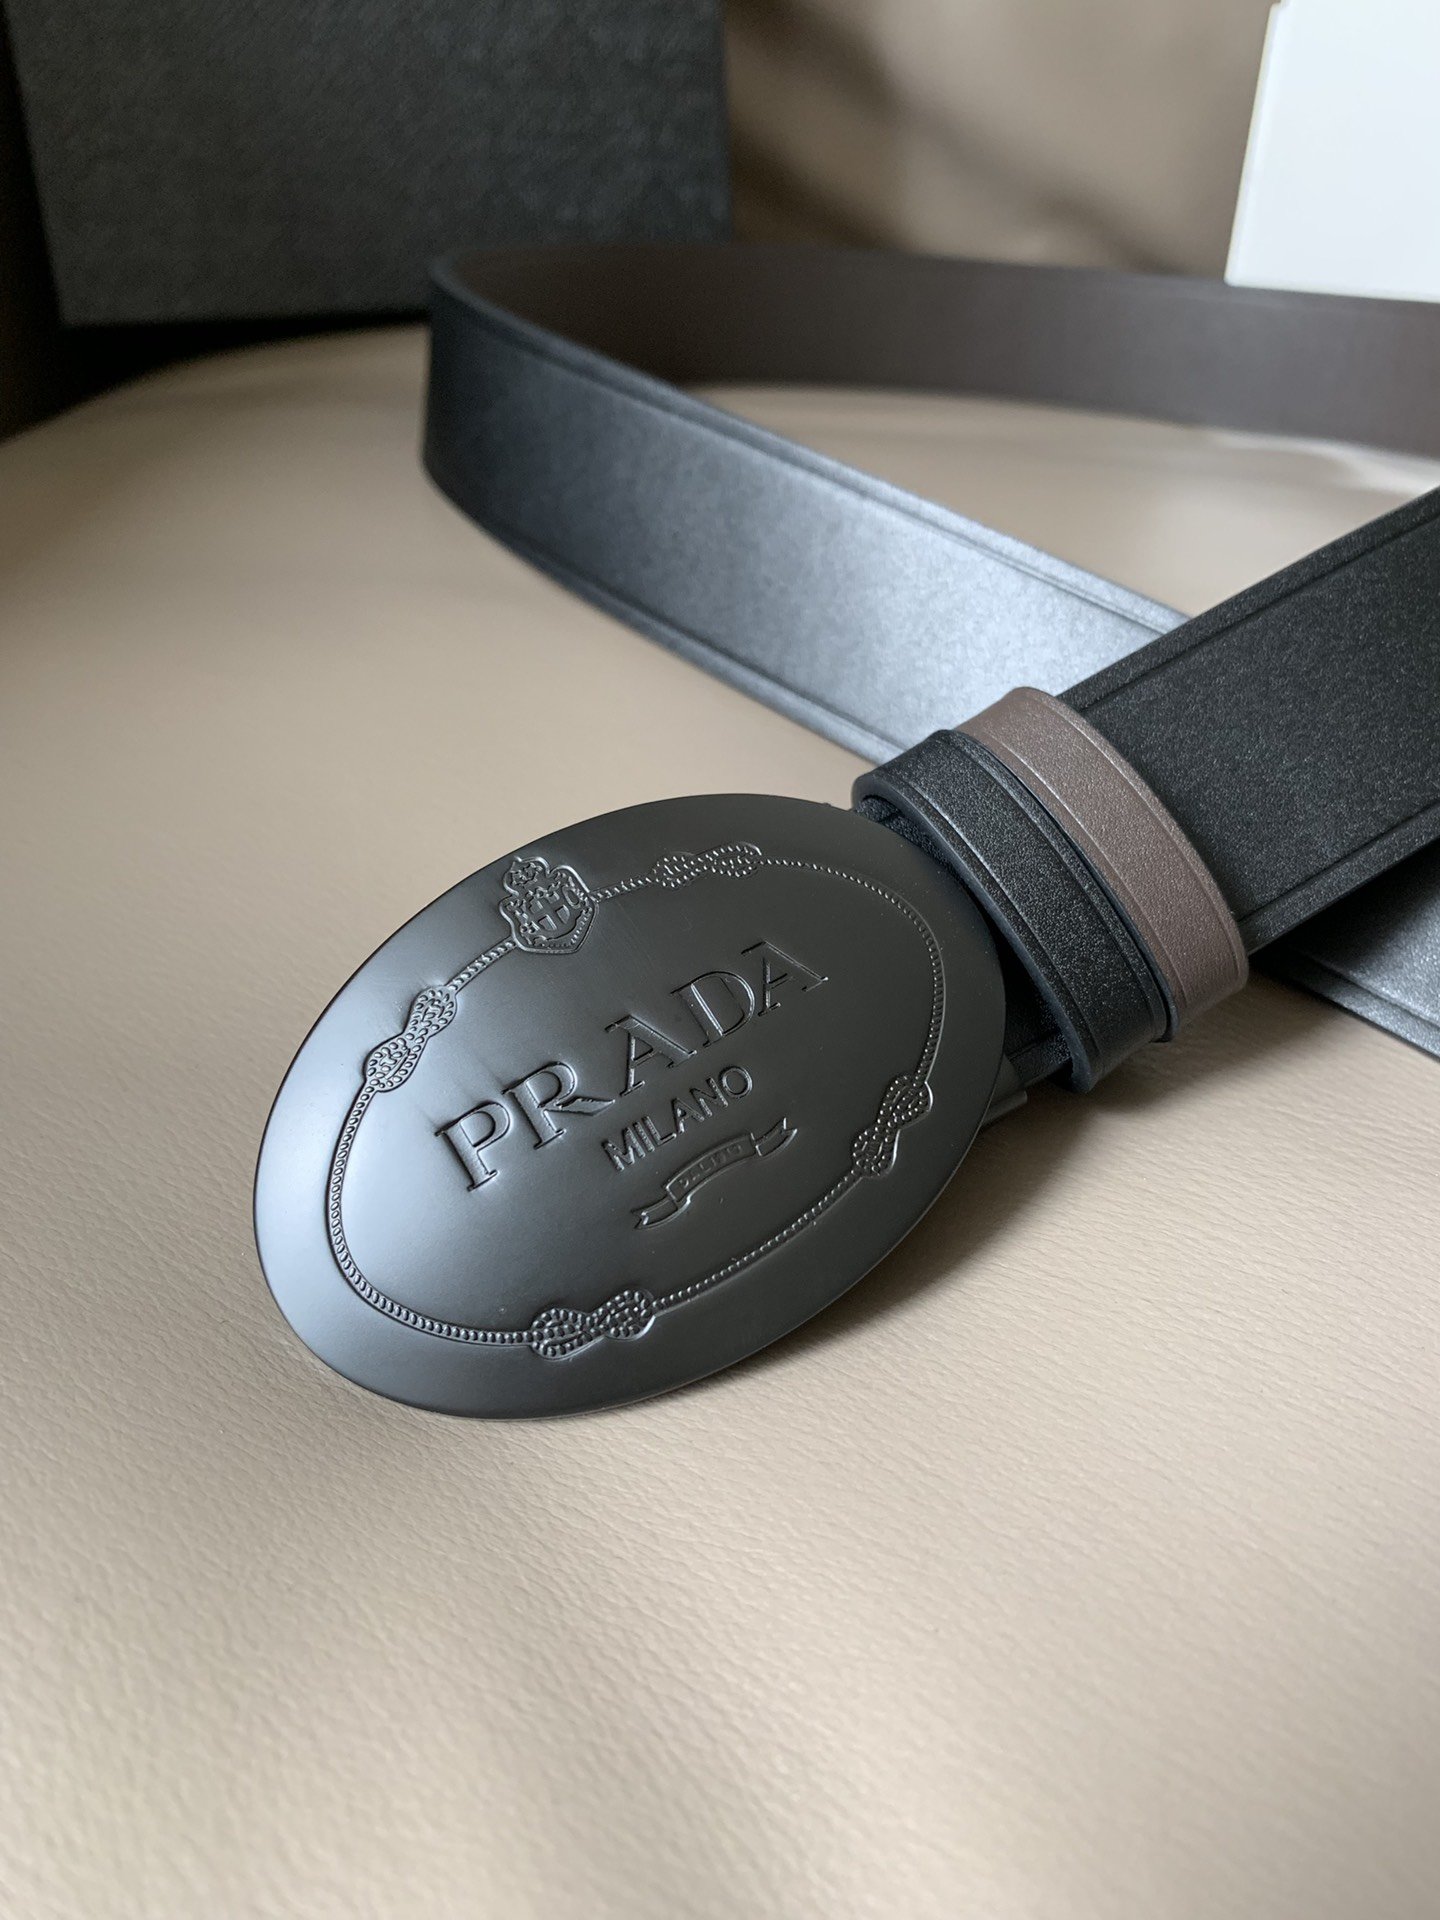 PRADA 프라다 오리지널 클래식 캐쥬얼 가죽 벨트 (폭:35mm)